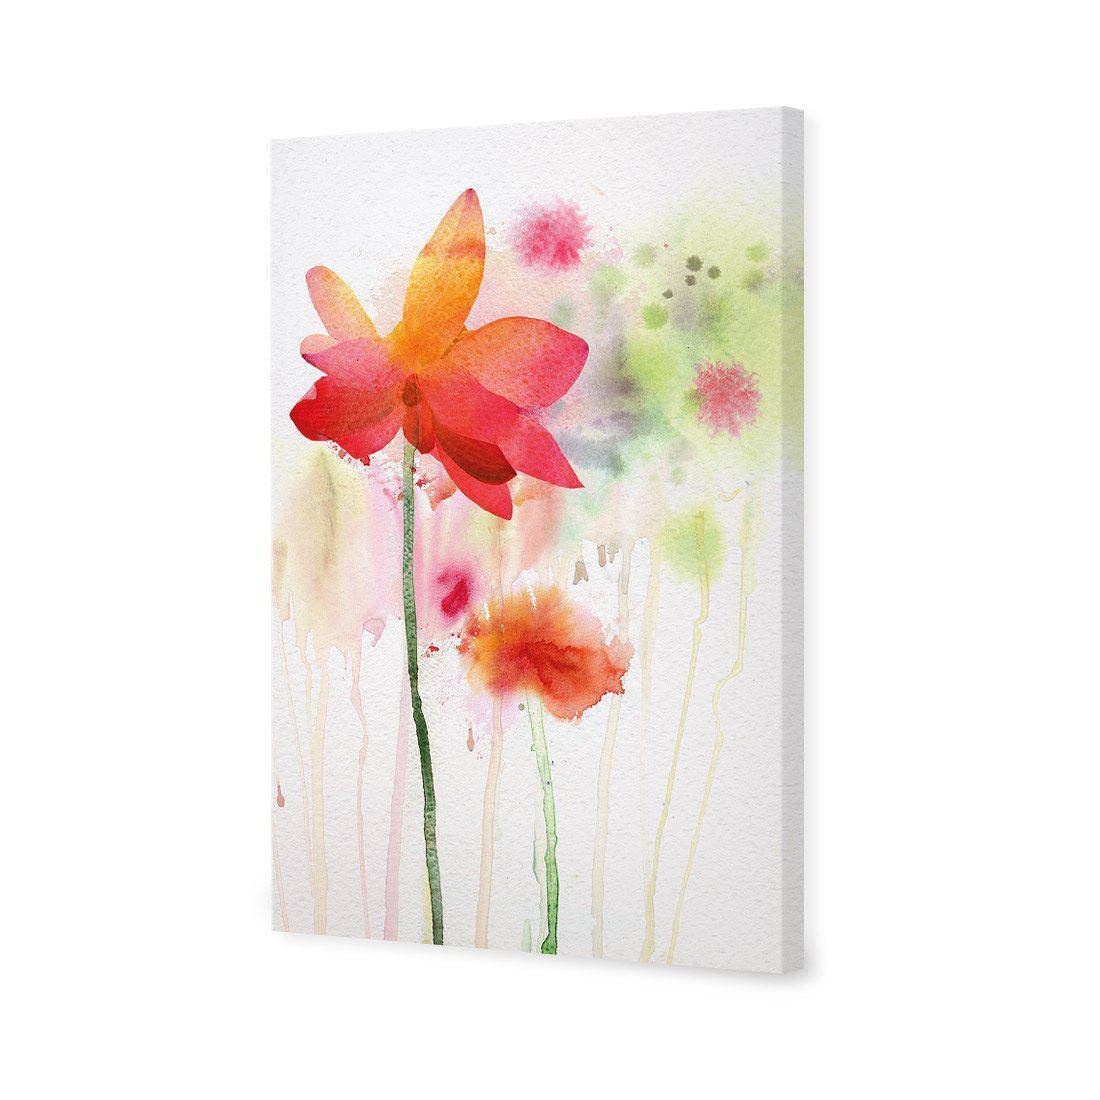 Spring Rain Canvas Art-Canvas-Wall Art Designs-45x30cm-Canvas - No Frame-Wall Art Designs